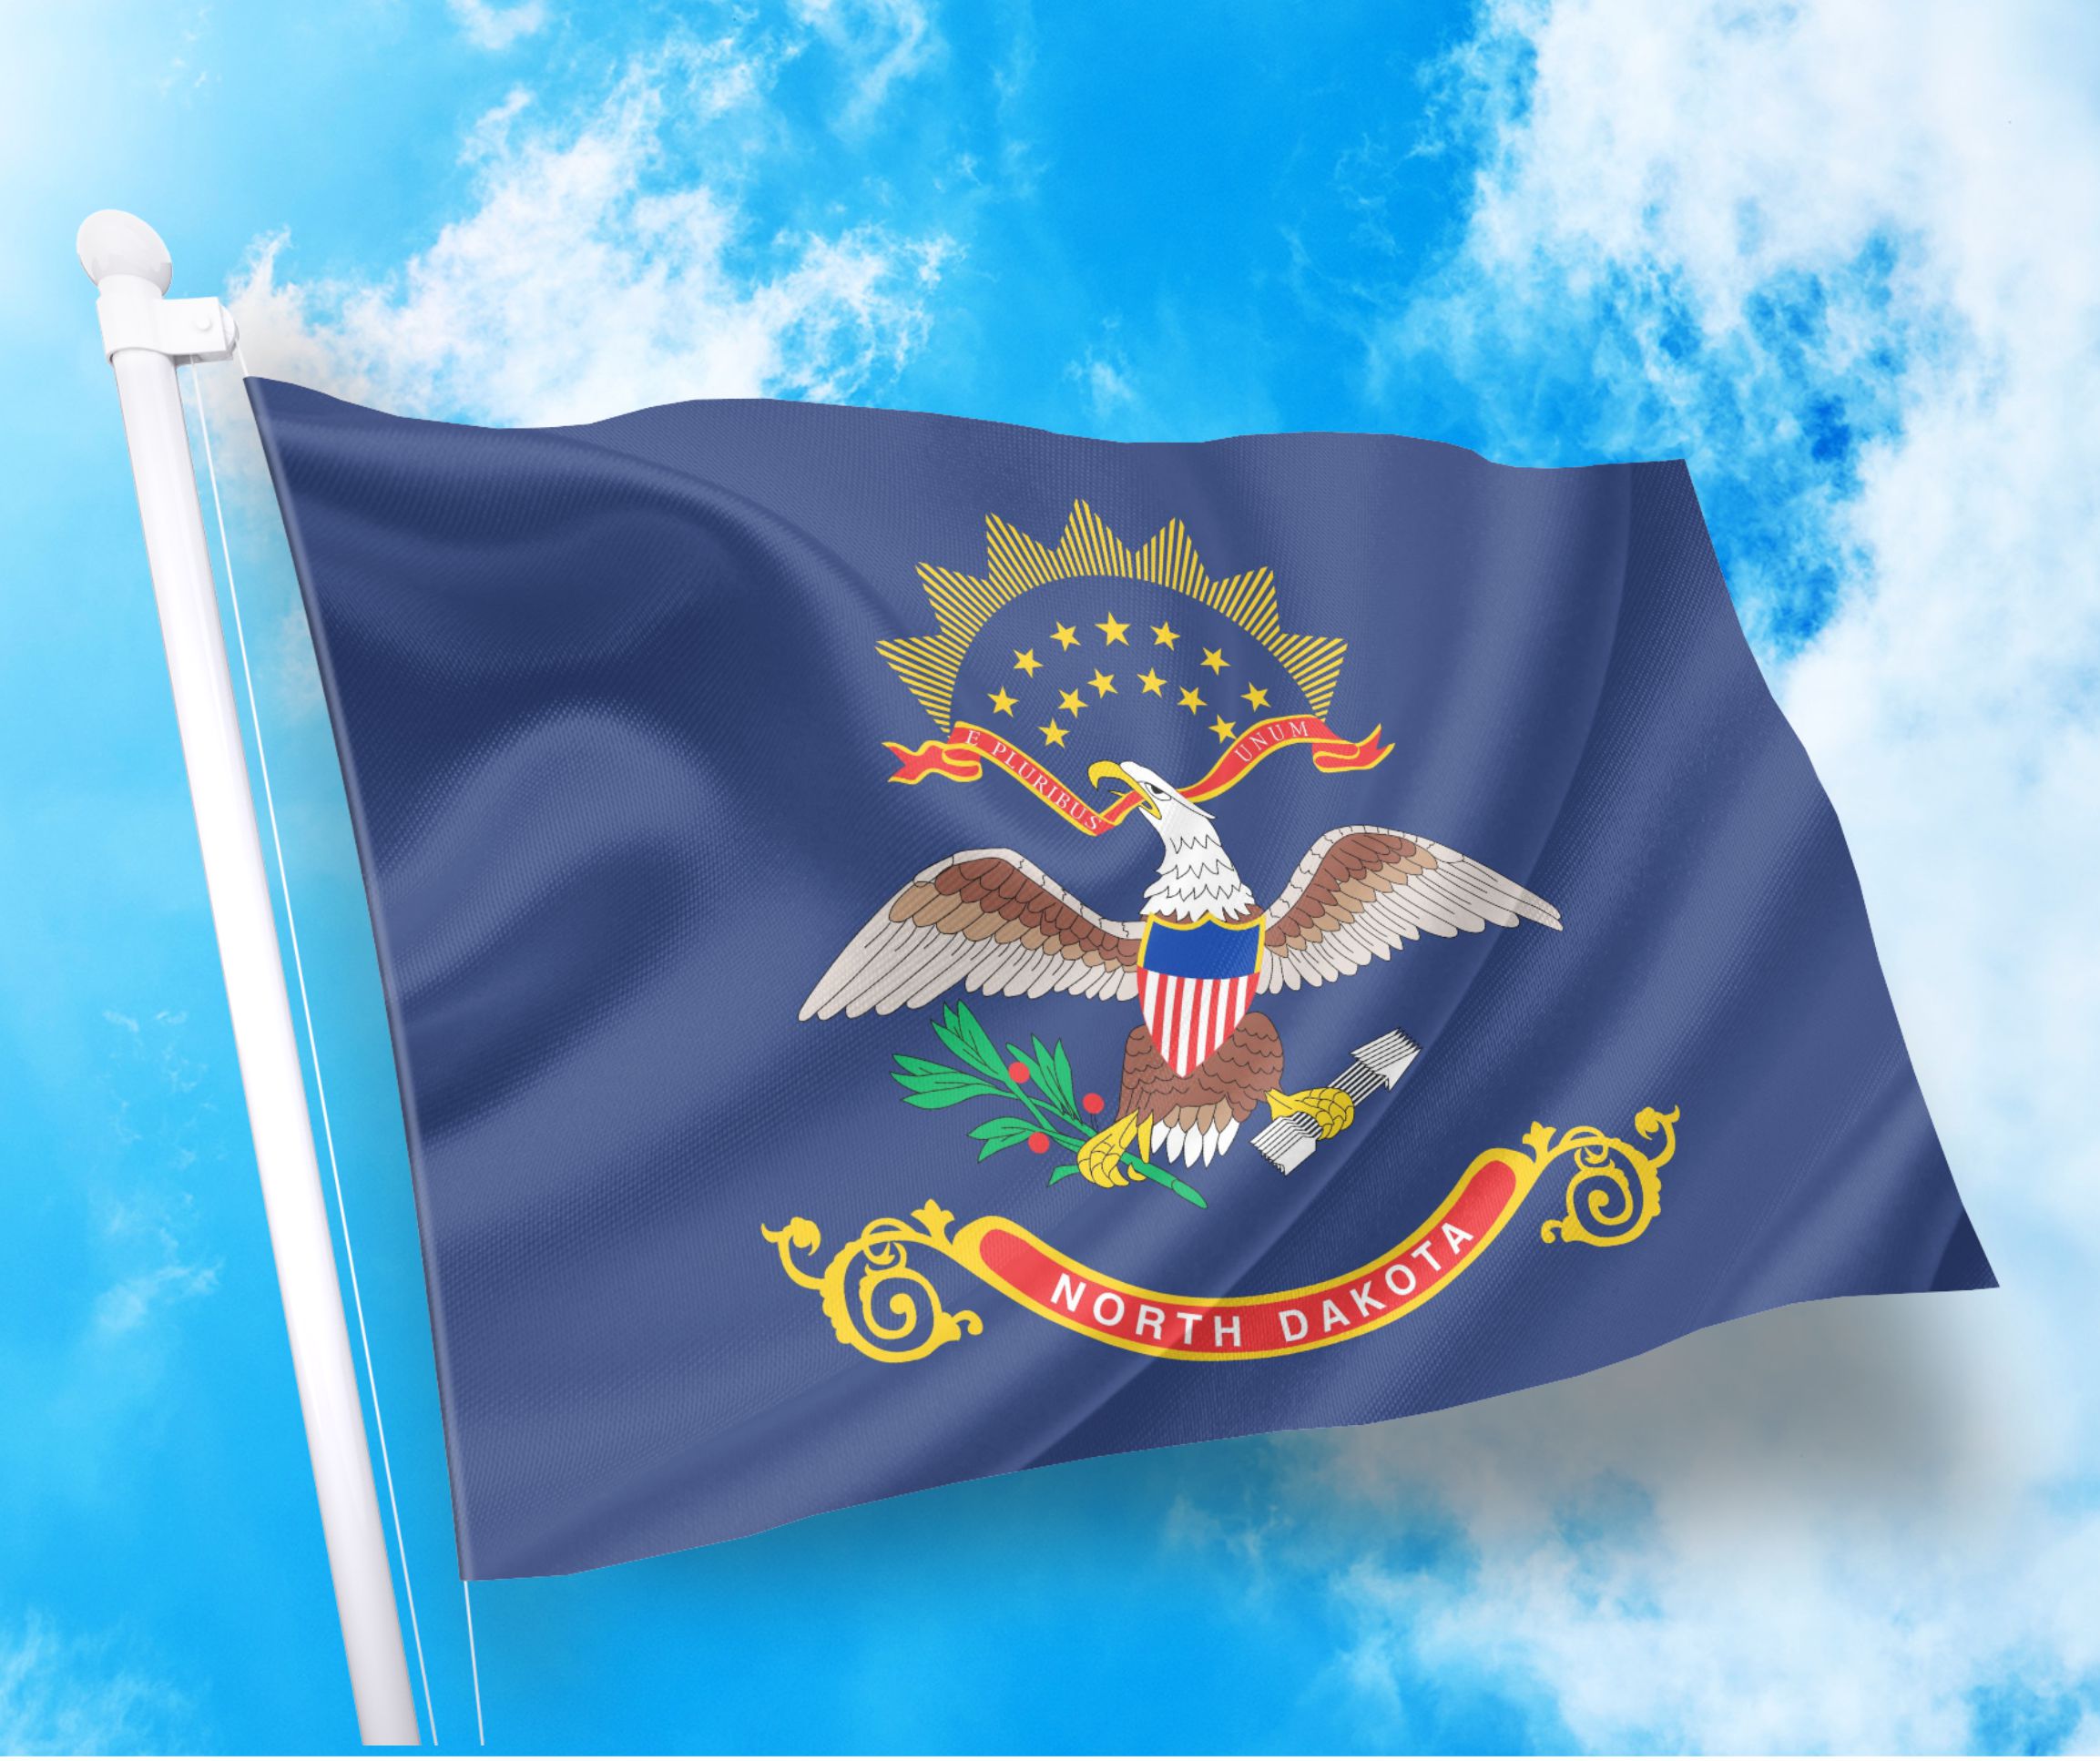 Σημαία Βόρεια Ντακότα - North Dakota